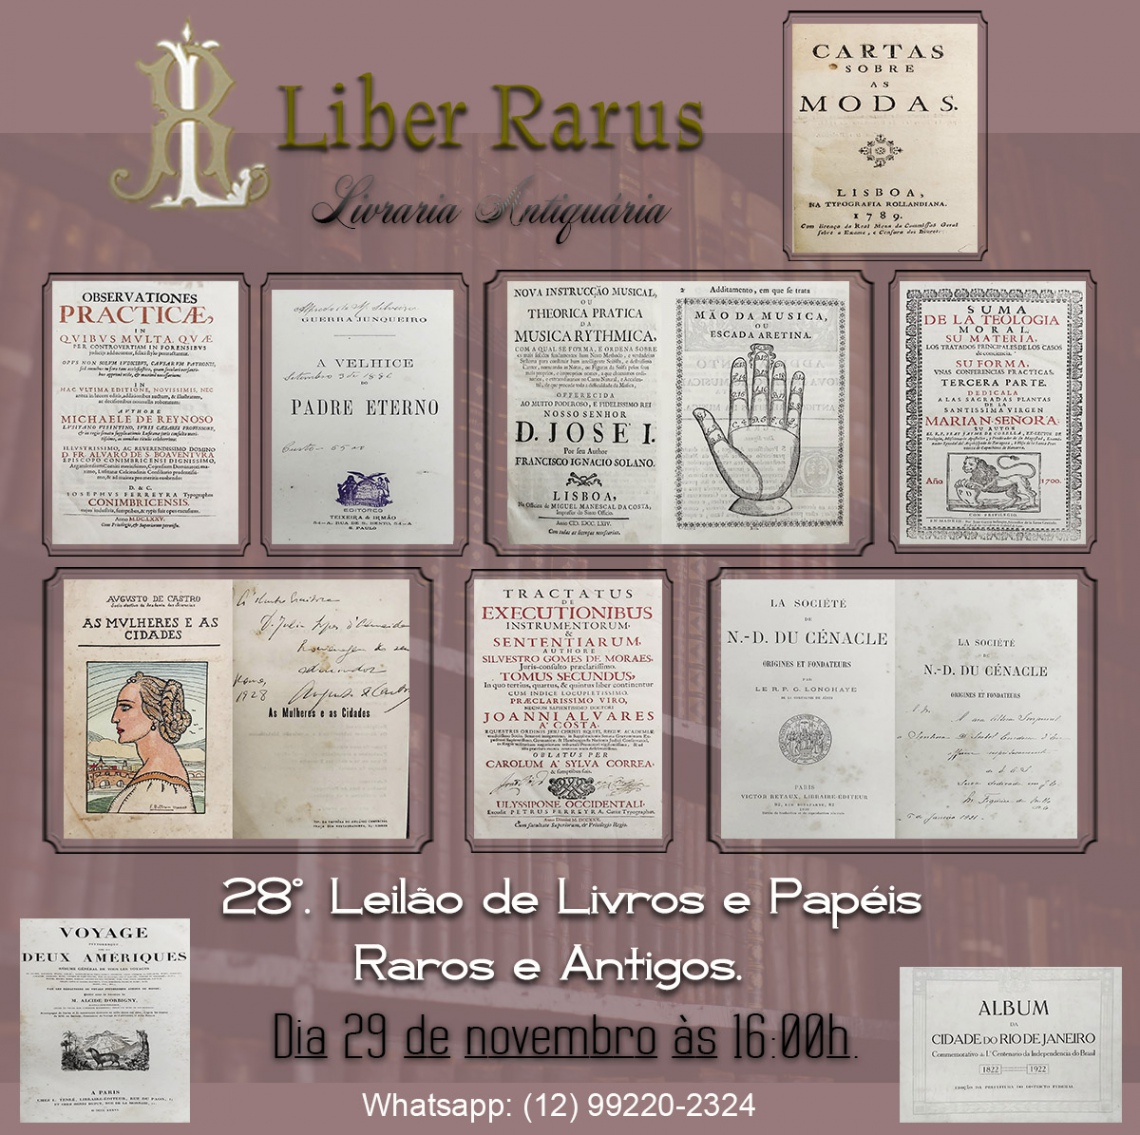 28º Leilão de Livros e Papéis Raros e Antigos - Liber Rarus - 29/11/2021 - 16h00